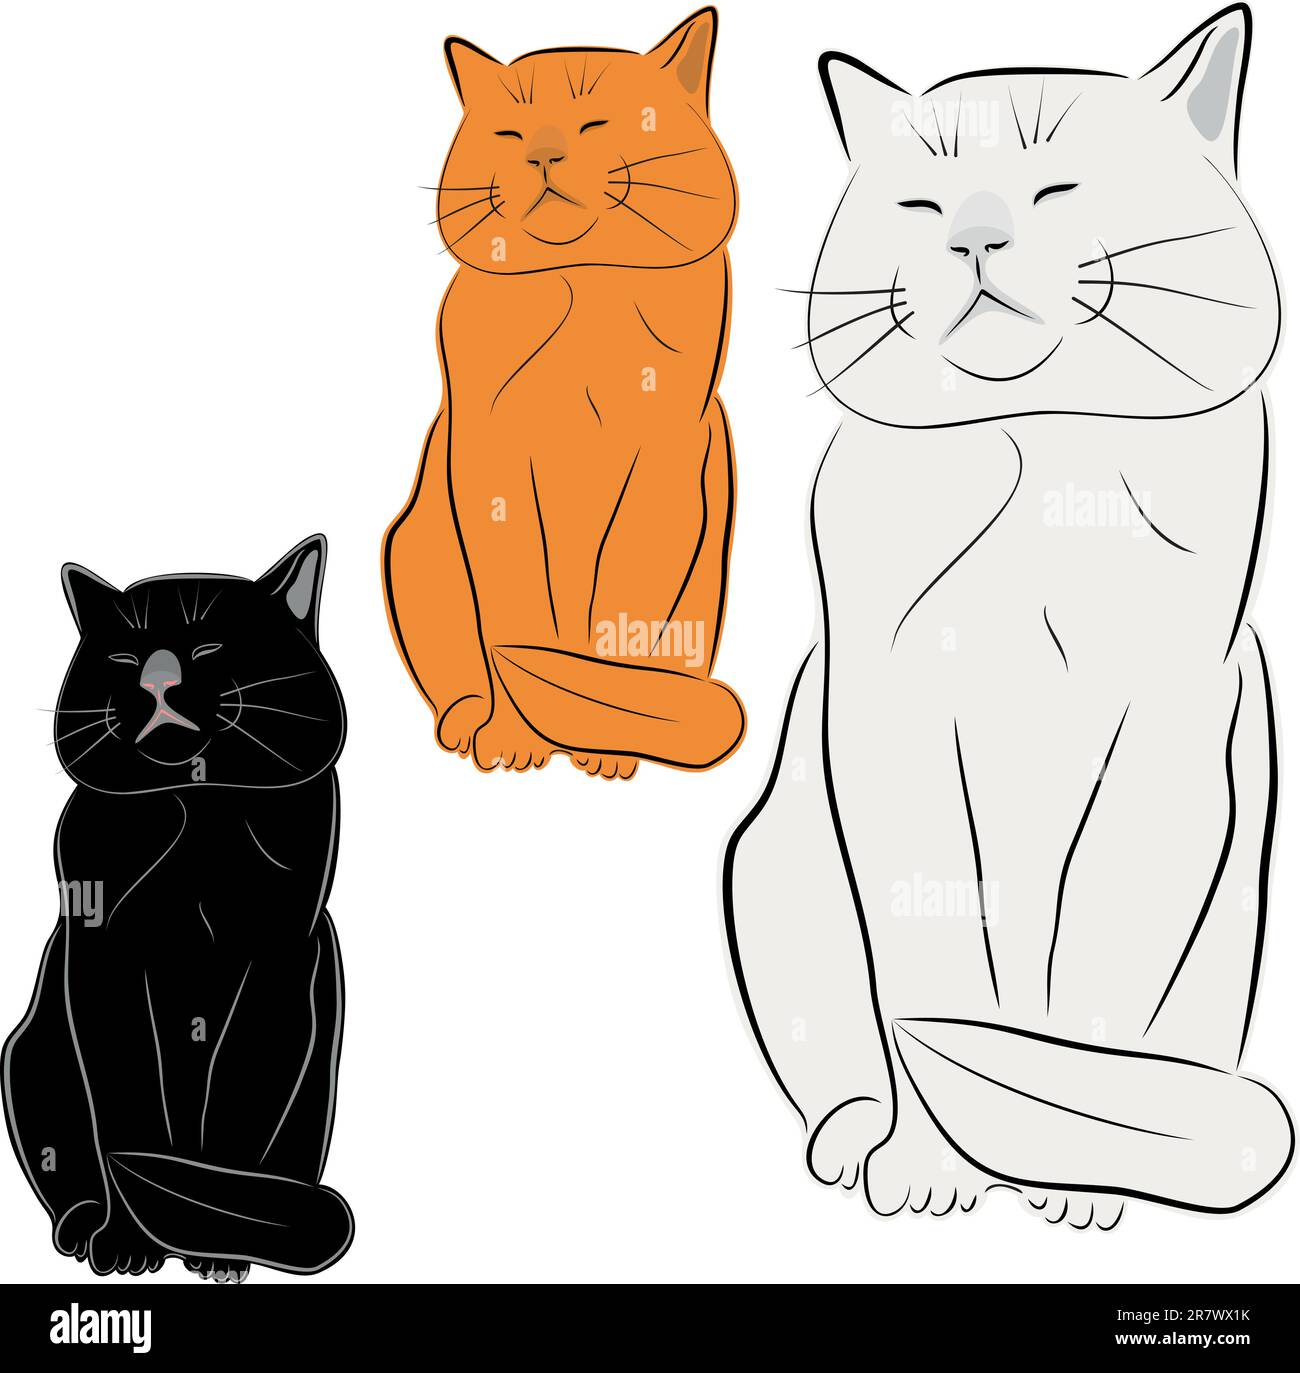 Cat, pet, vector drawing, illustration. Sculpture of a cat. Stock Vector